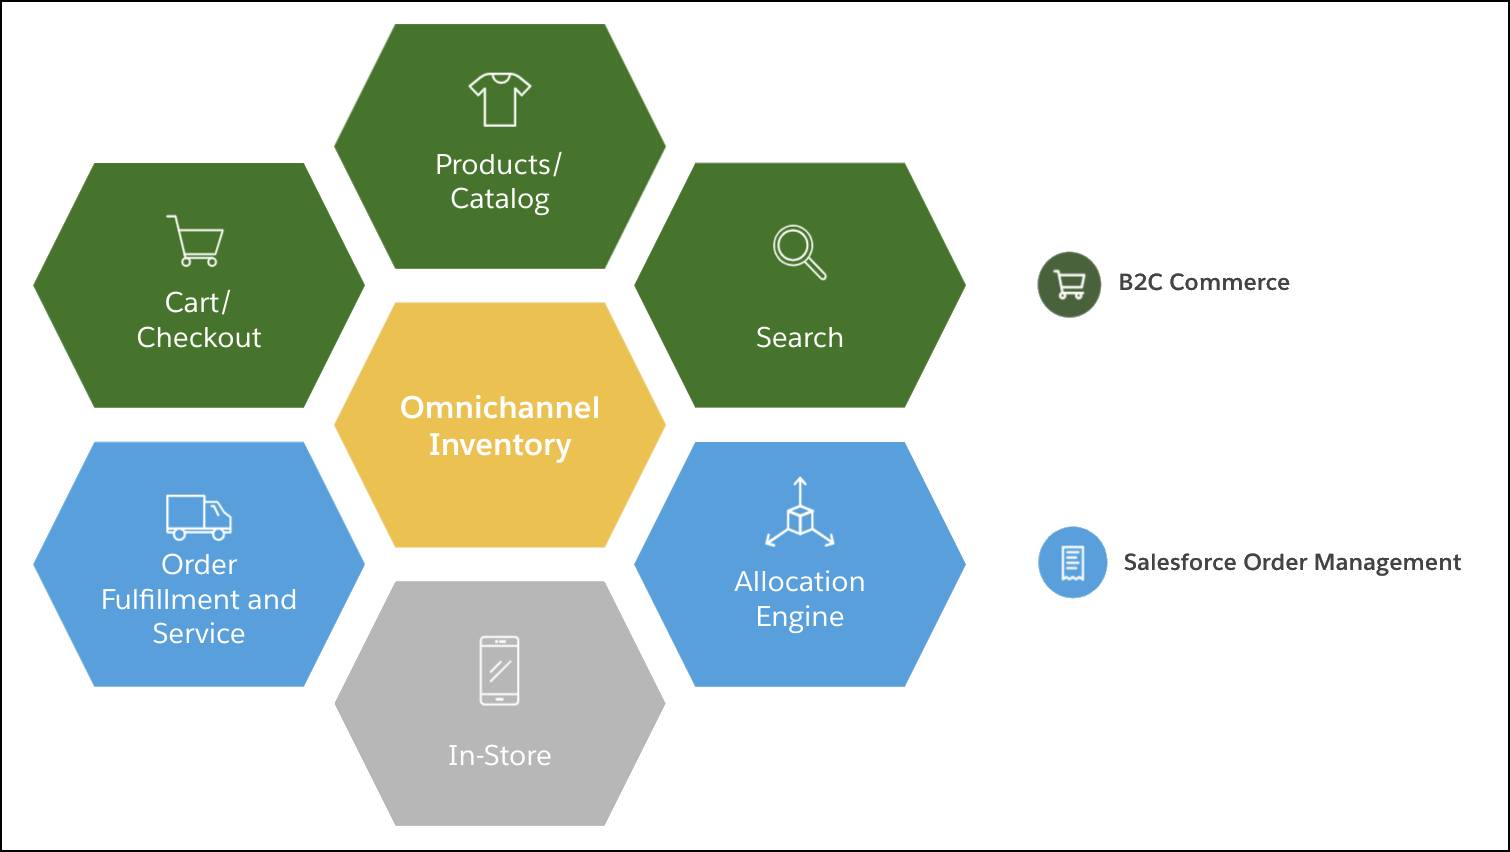 Gráfico hub-and-spoke mostrando a relação do Omnichannel Inventory (hub) com as operações de gerenciamento de pedidos (alocação, cumprimento, serviço) e experiências do B2C Commerce (carrinho, checkout, produtos, catálogo, pesquisa).